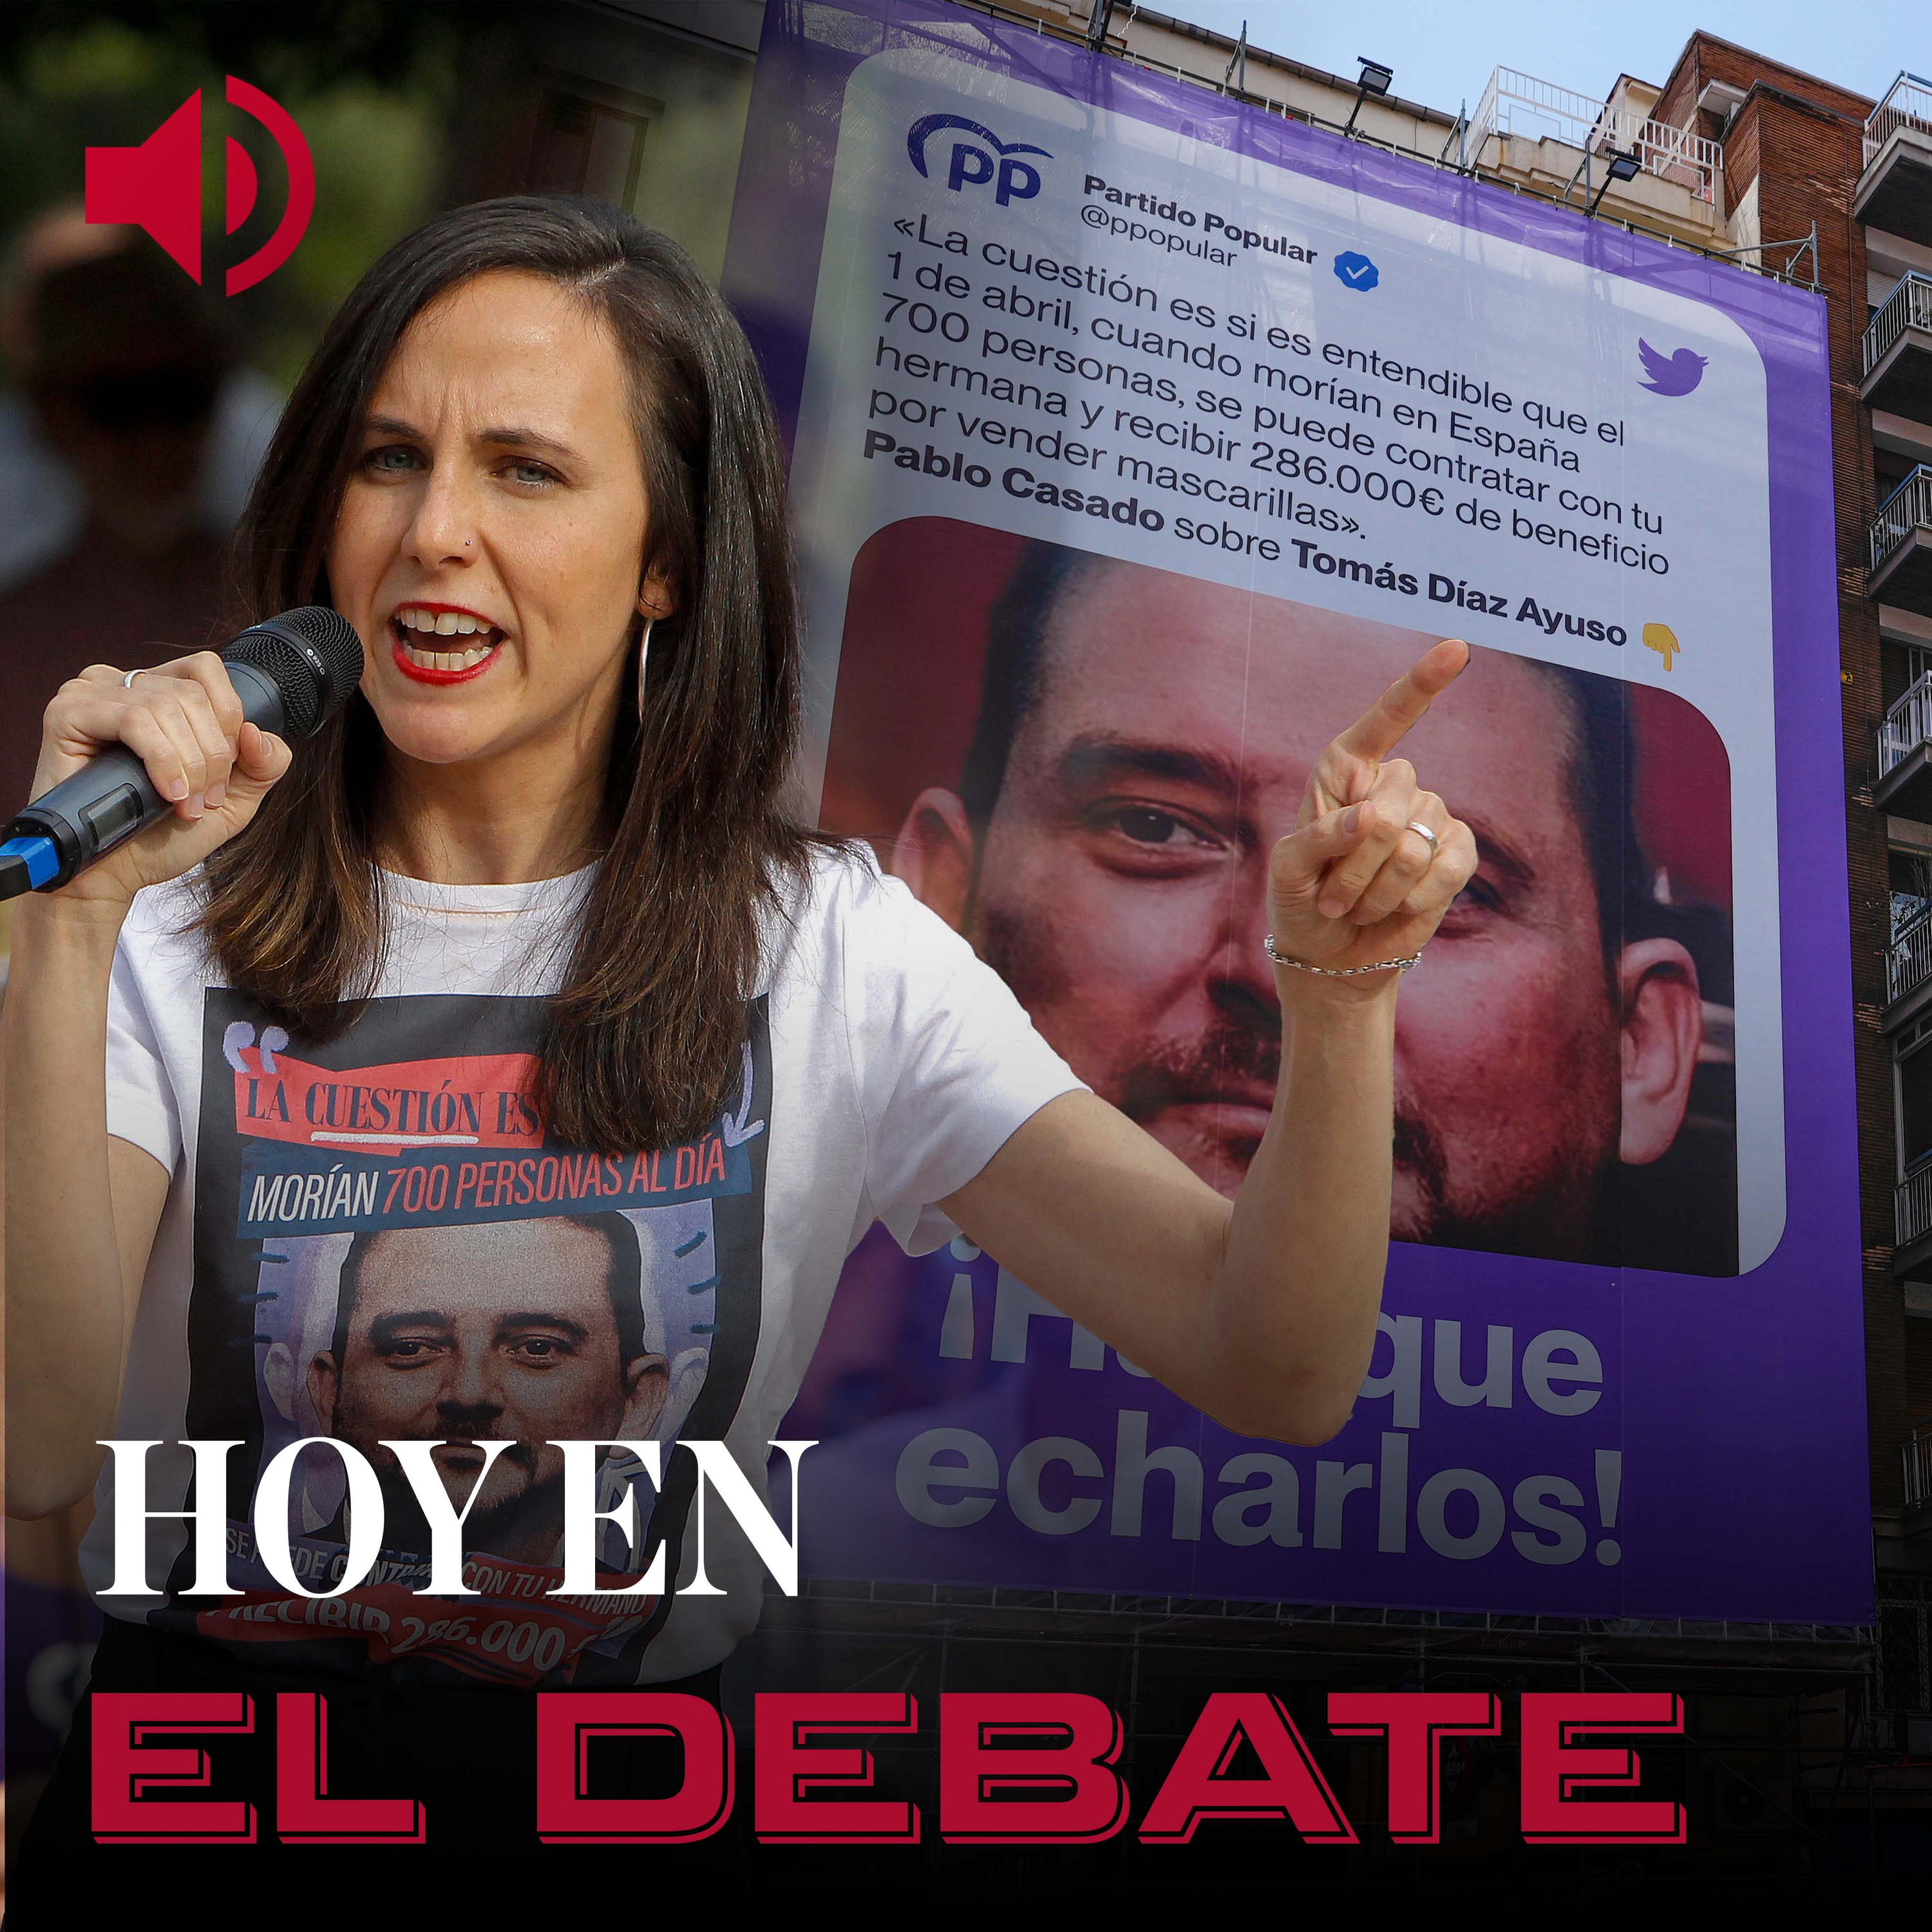 La doble moral de Podemos: de criticar escraches a acosar al hermano de Ayuso